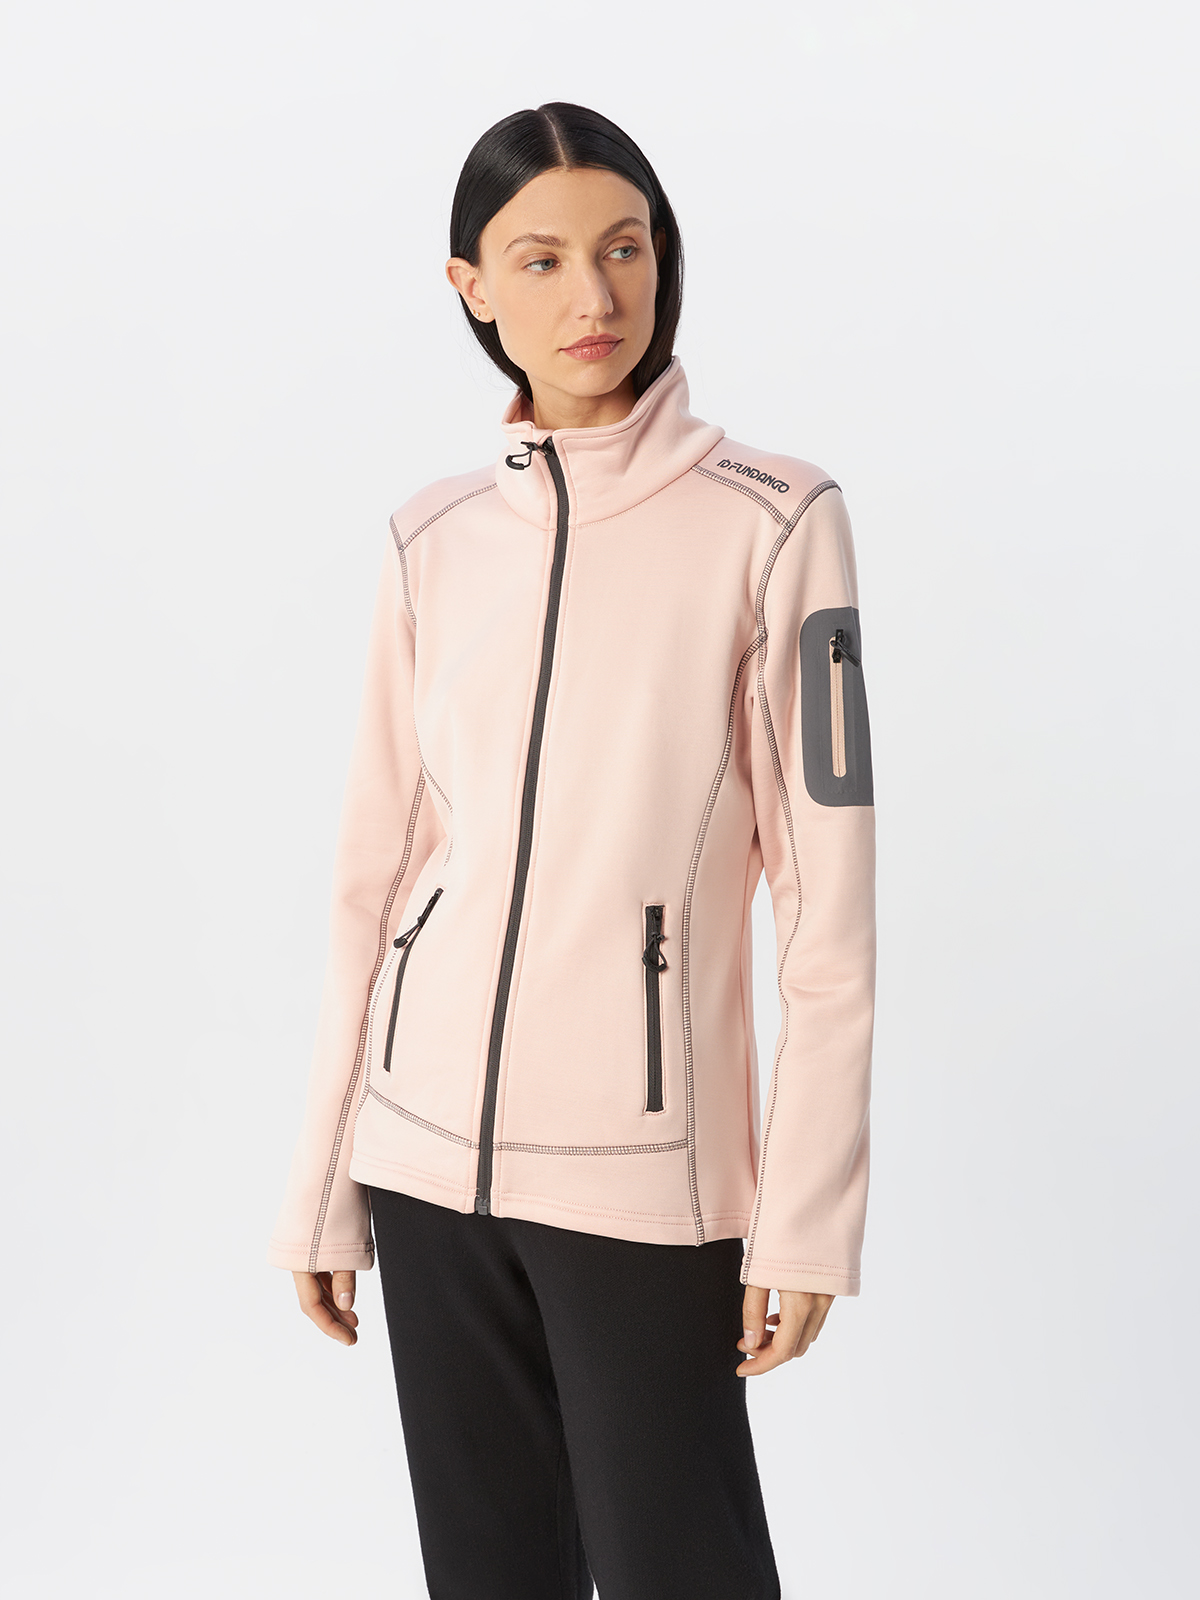 Куртка Fundango для женщин, софтшелл, размер XL, 2MAD105, розовая